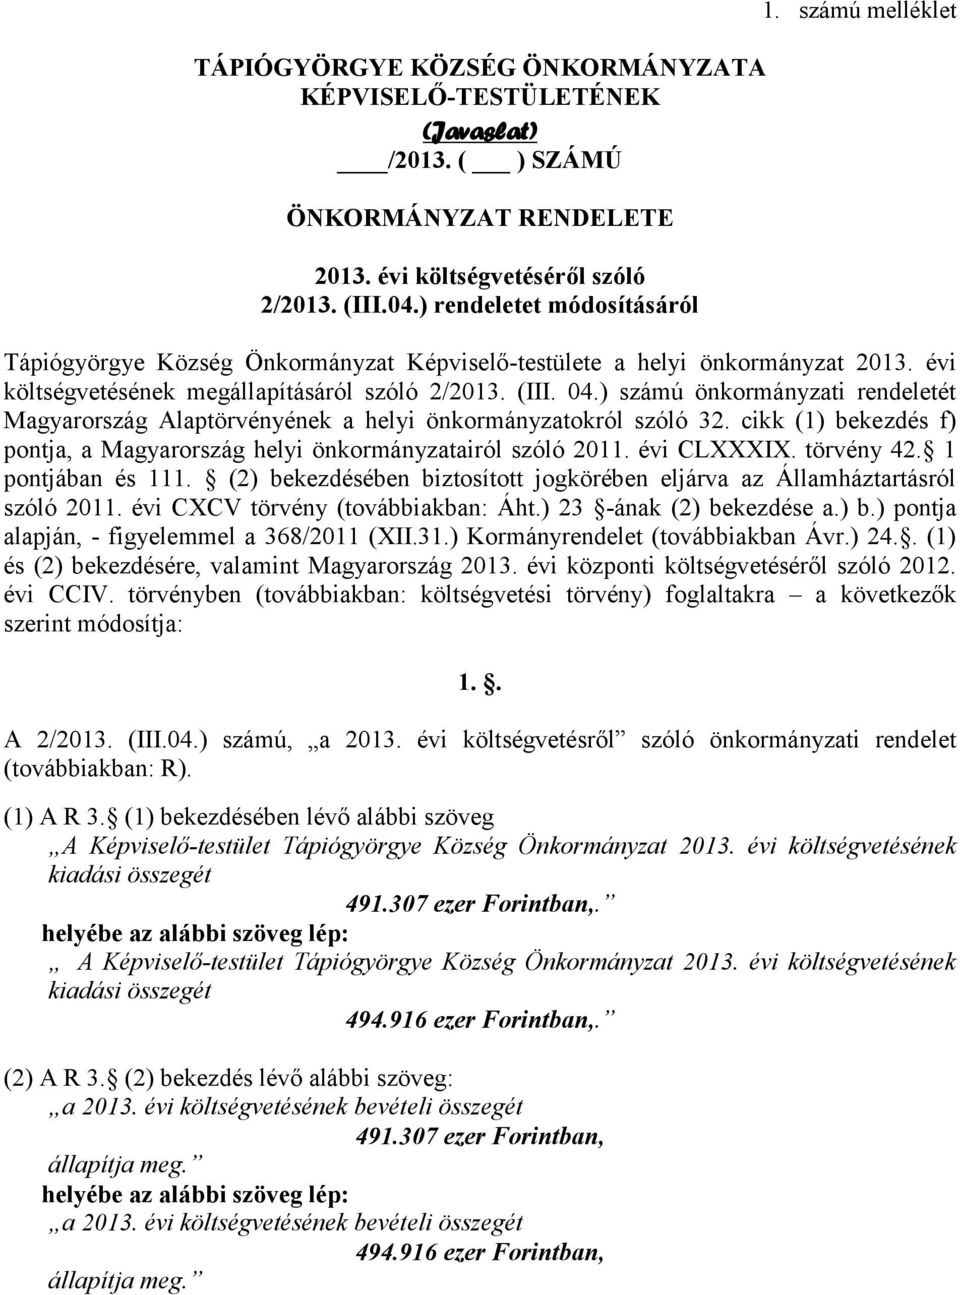 ) számú önkormányzati rendeletét Magyarország Alaptörvényének a helyi önkormányzatokról szóló 32. cikk (1) bekezdés f) pontja, a Magyarország helyi önkormányzatairól szóló 2011. évi CLXXXIX.